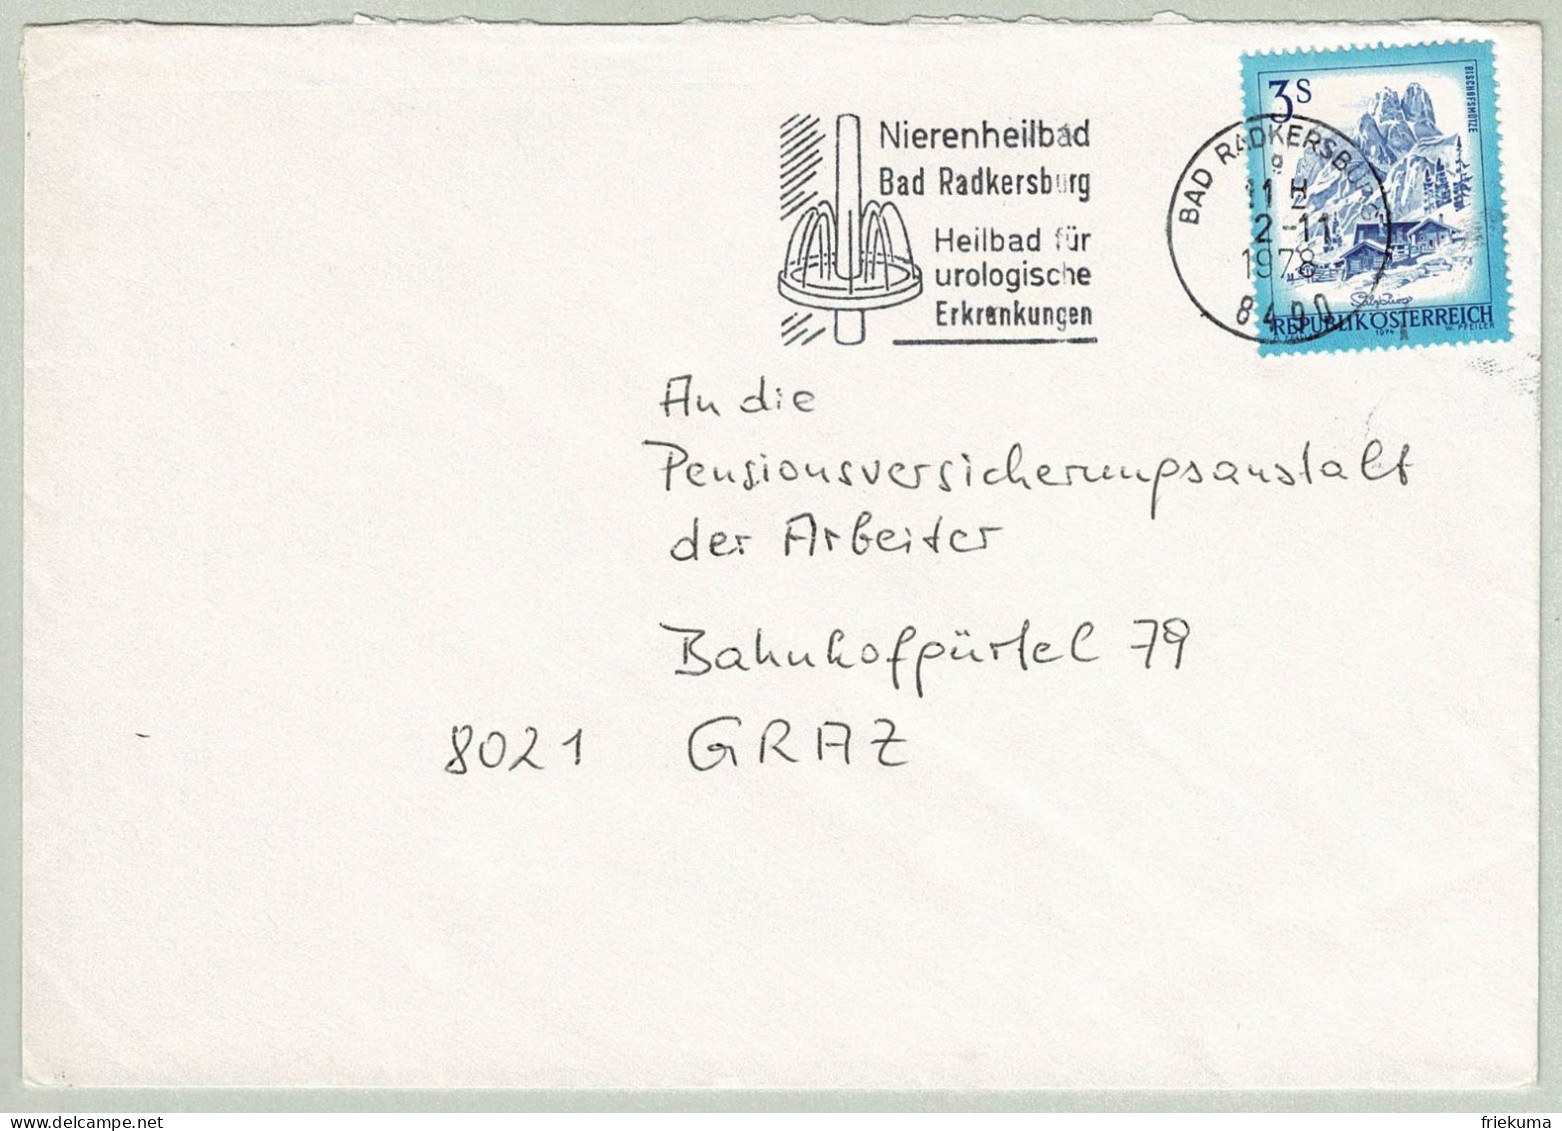 Oesterreich / Austria 1978, Brief Bad Radkersburg - Graz, Nierenheilbad, Urologische Erkrankungen - Kuurwezen